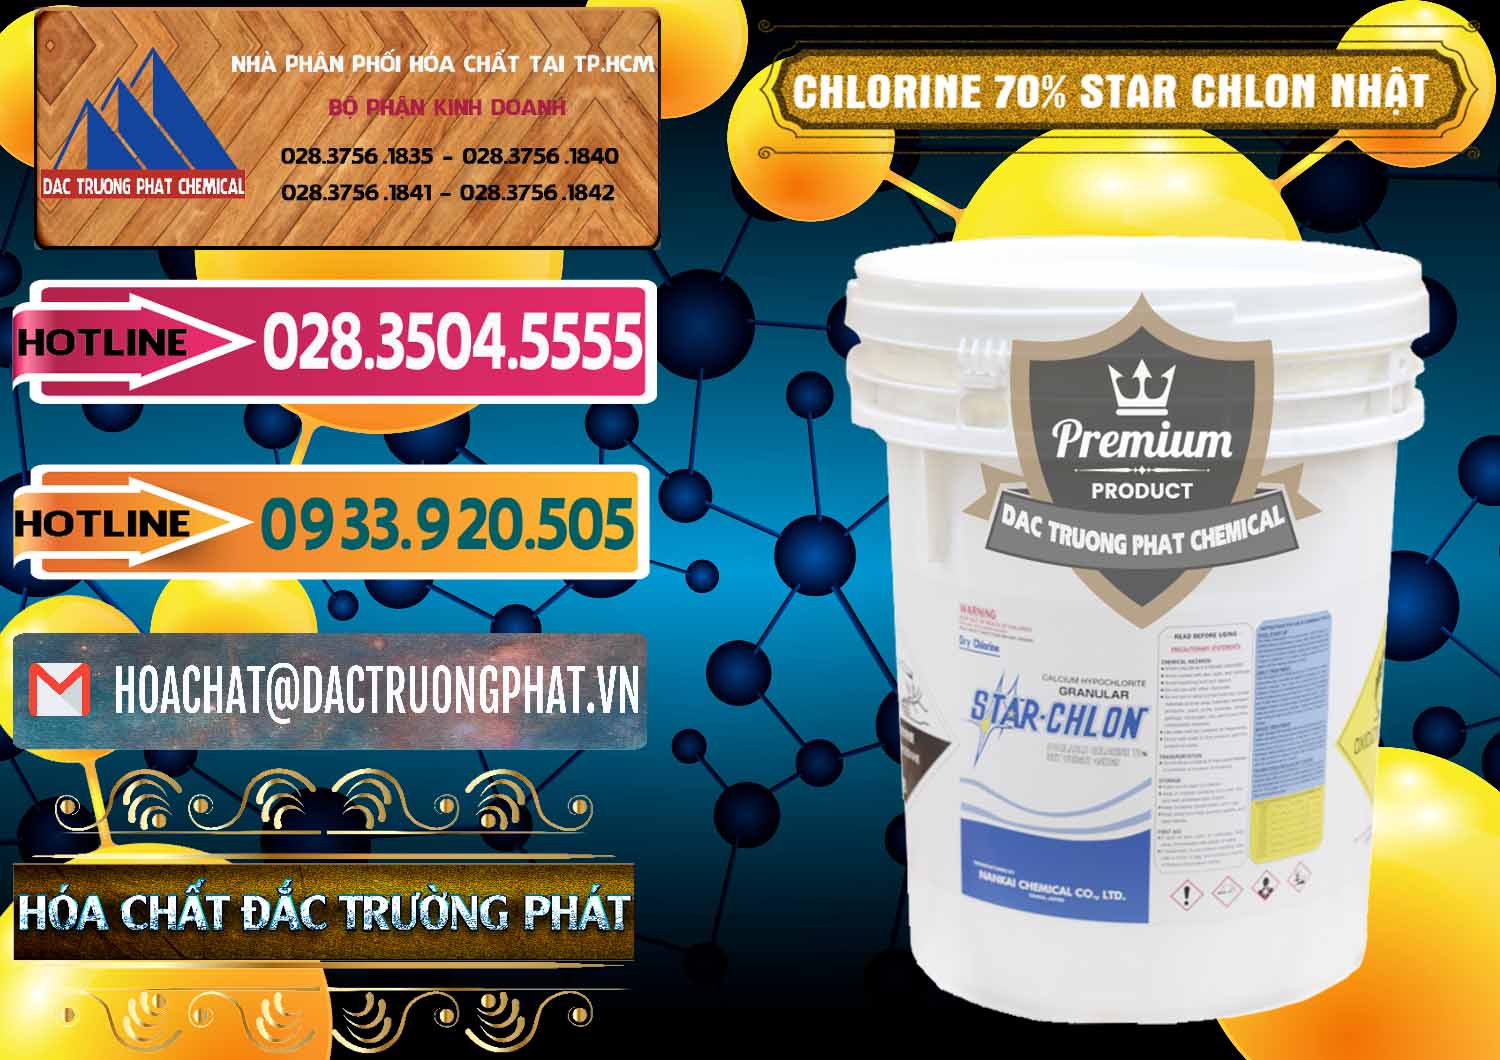 Chuyên bán & cung cấp Clorin – Chlorine 70% Star Chlon Nhật Bản Japan - 0243 - Công ty cung cấp và kinh doanh hóa chất tại TP.HCM - dactruongphat.vn